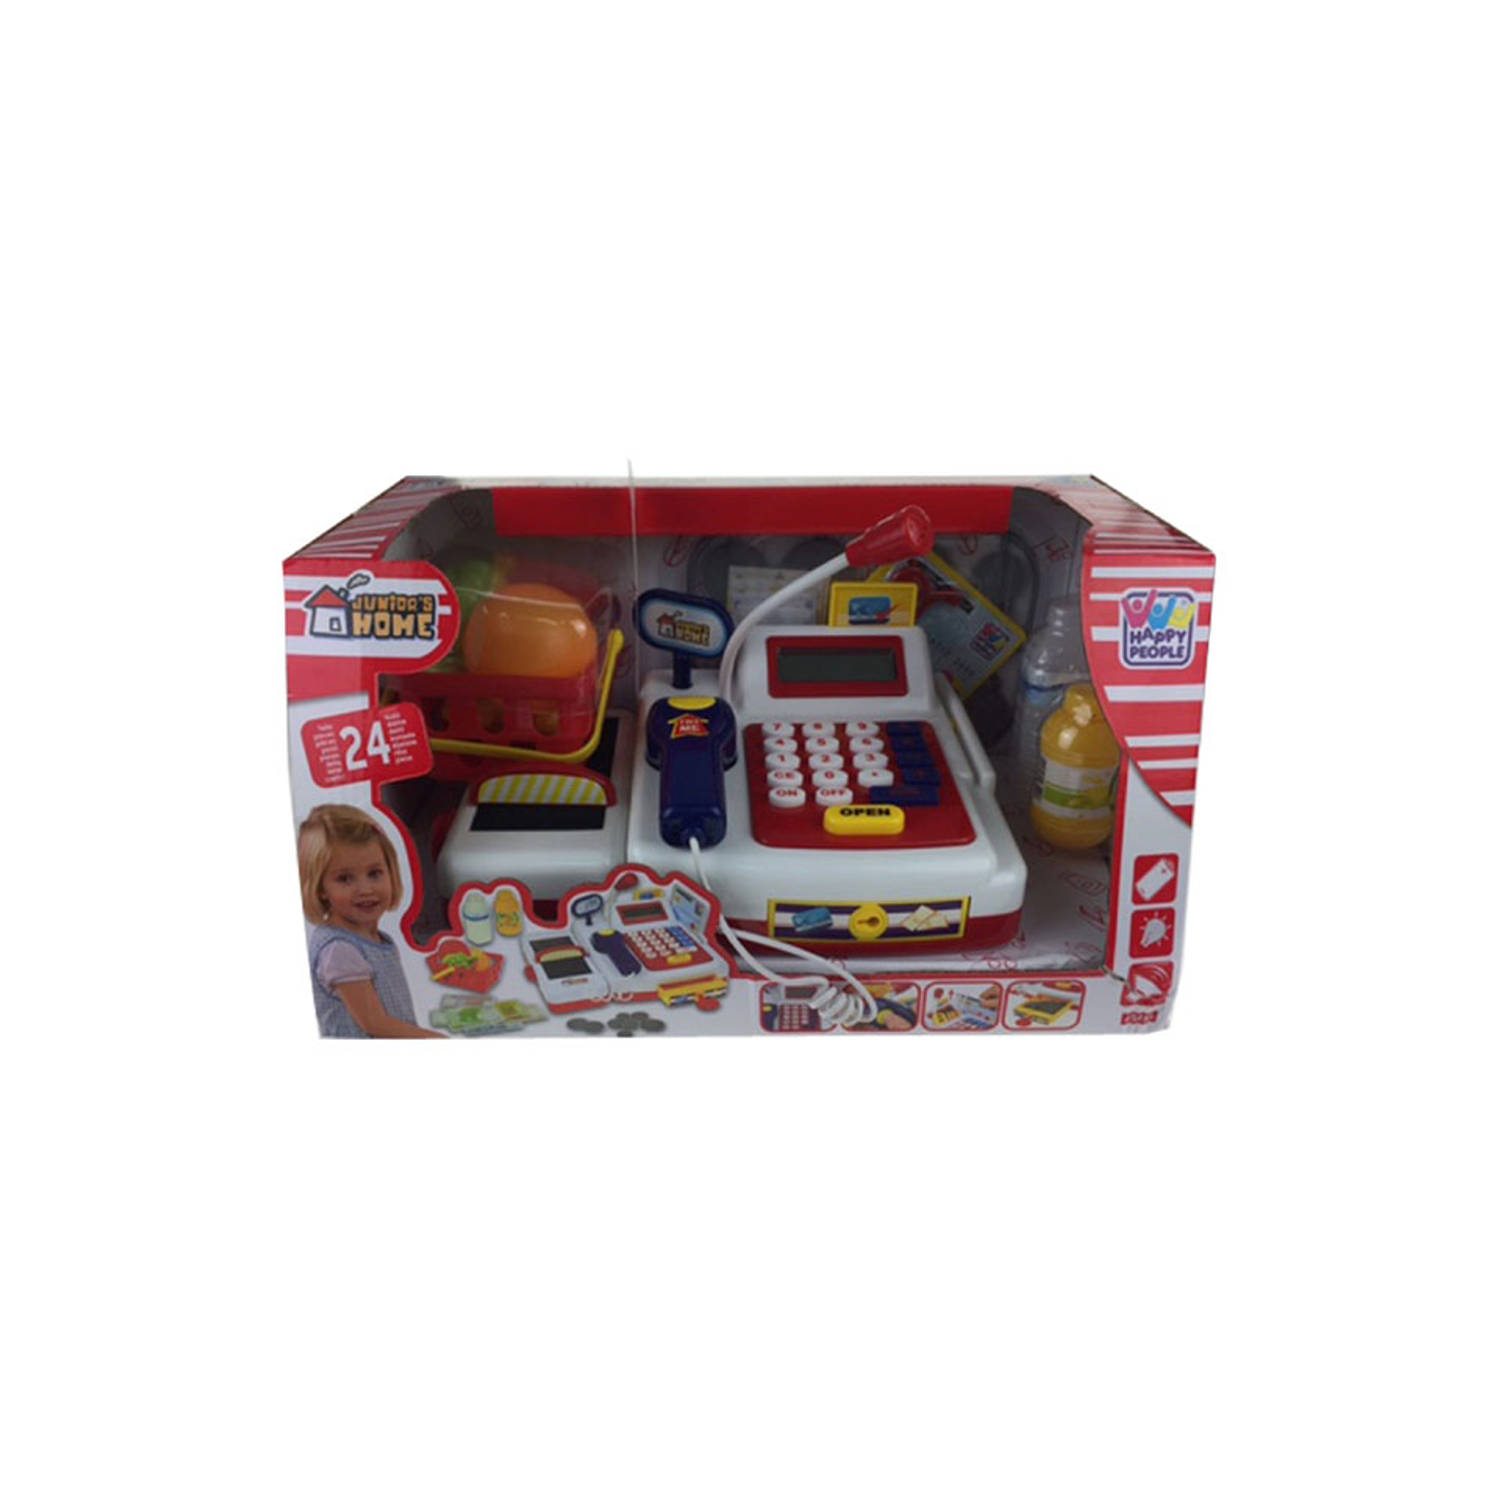 Speelgoed kassa met boodschappen 24x 17x 11 cm voor kinderen - Met licht en geluid - Rekenen leren/oefenen - Speelkassa met pinpas - Winkeltje spelen kinderspeelgoed